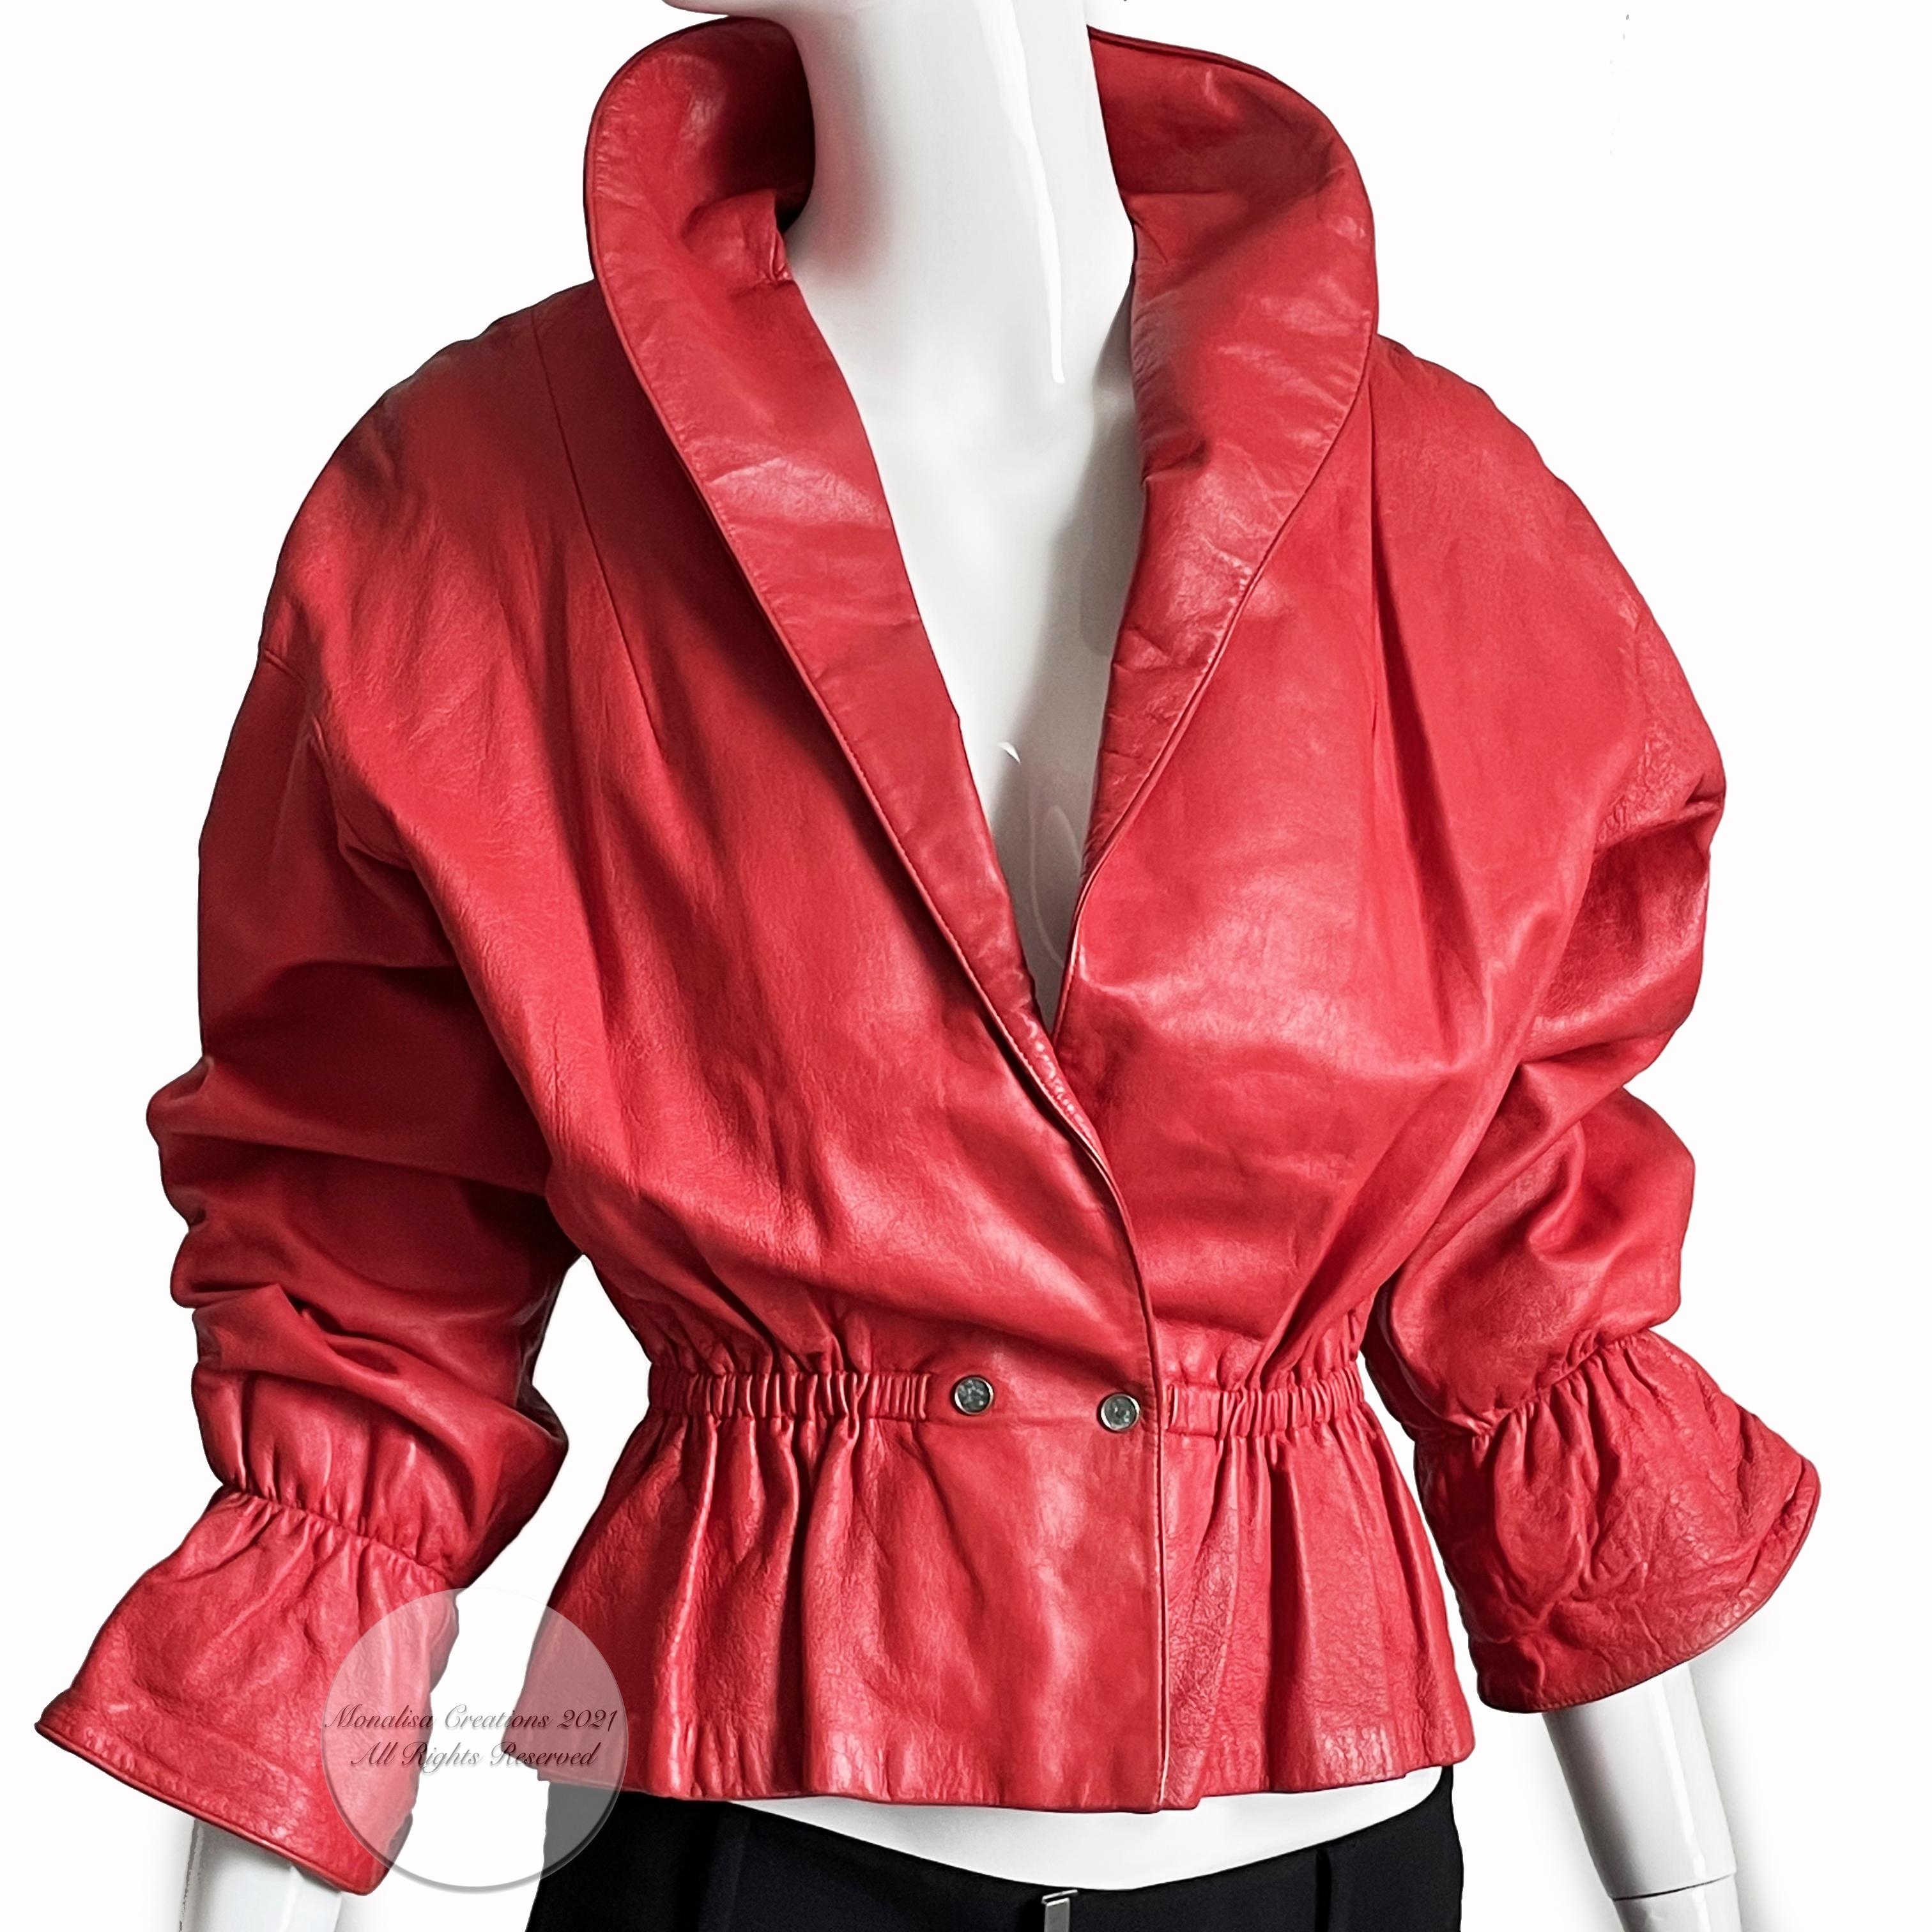 Authentique veste en cuir rouge vintage de Bonnie Cashin pour Sills, datant du début des années 60. Un style incroyablement rare de la mère du sportswear américain moderne !  Réalisée en cuir rouge, elle présente des manches Dolman, un col châle,